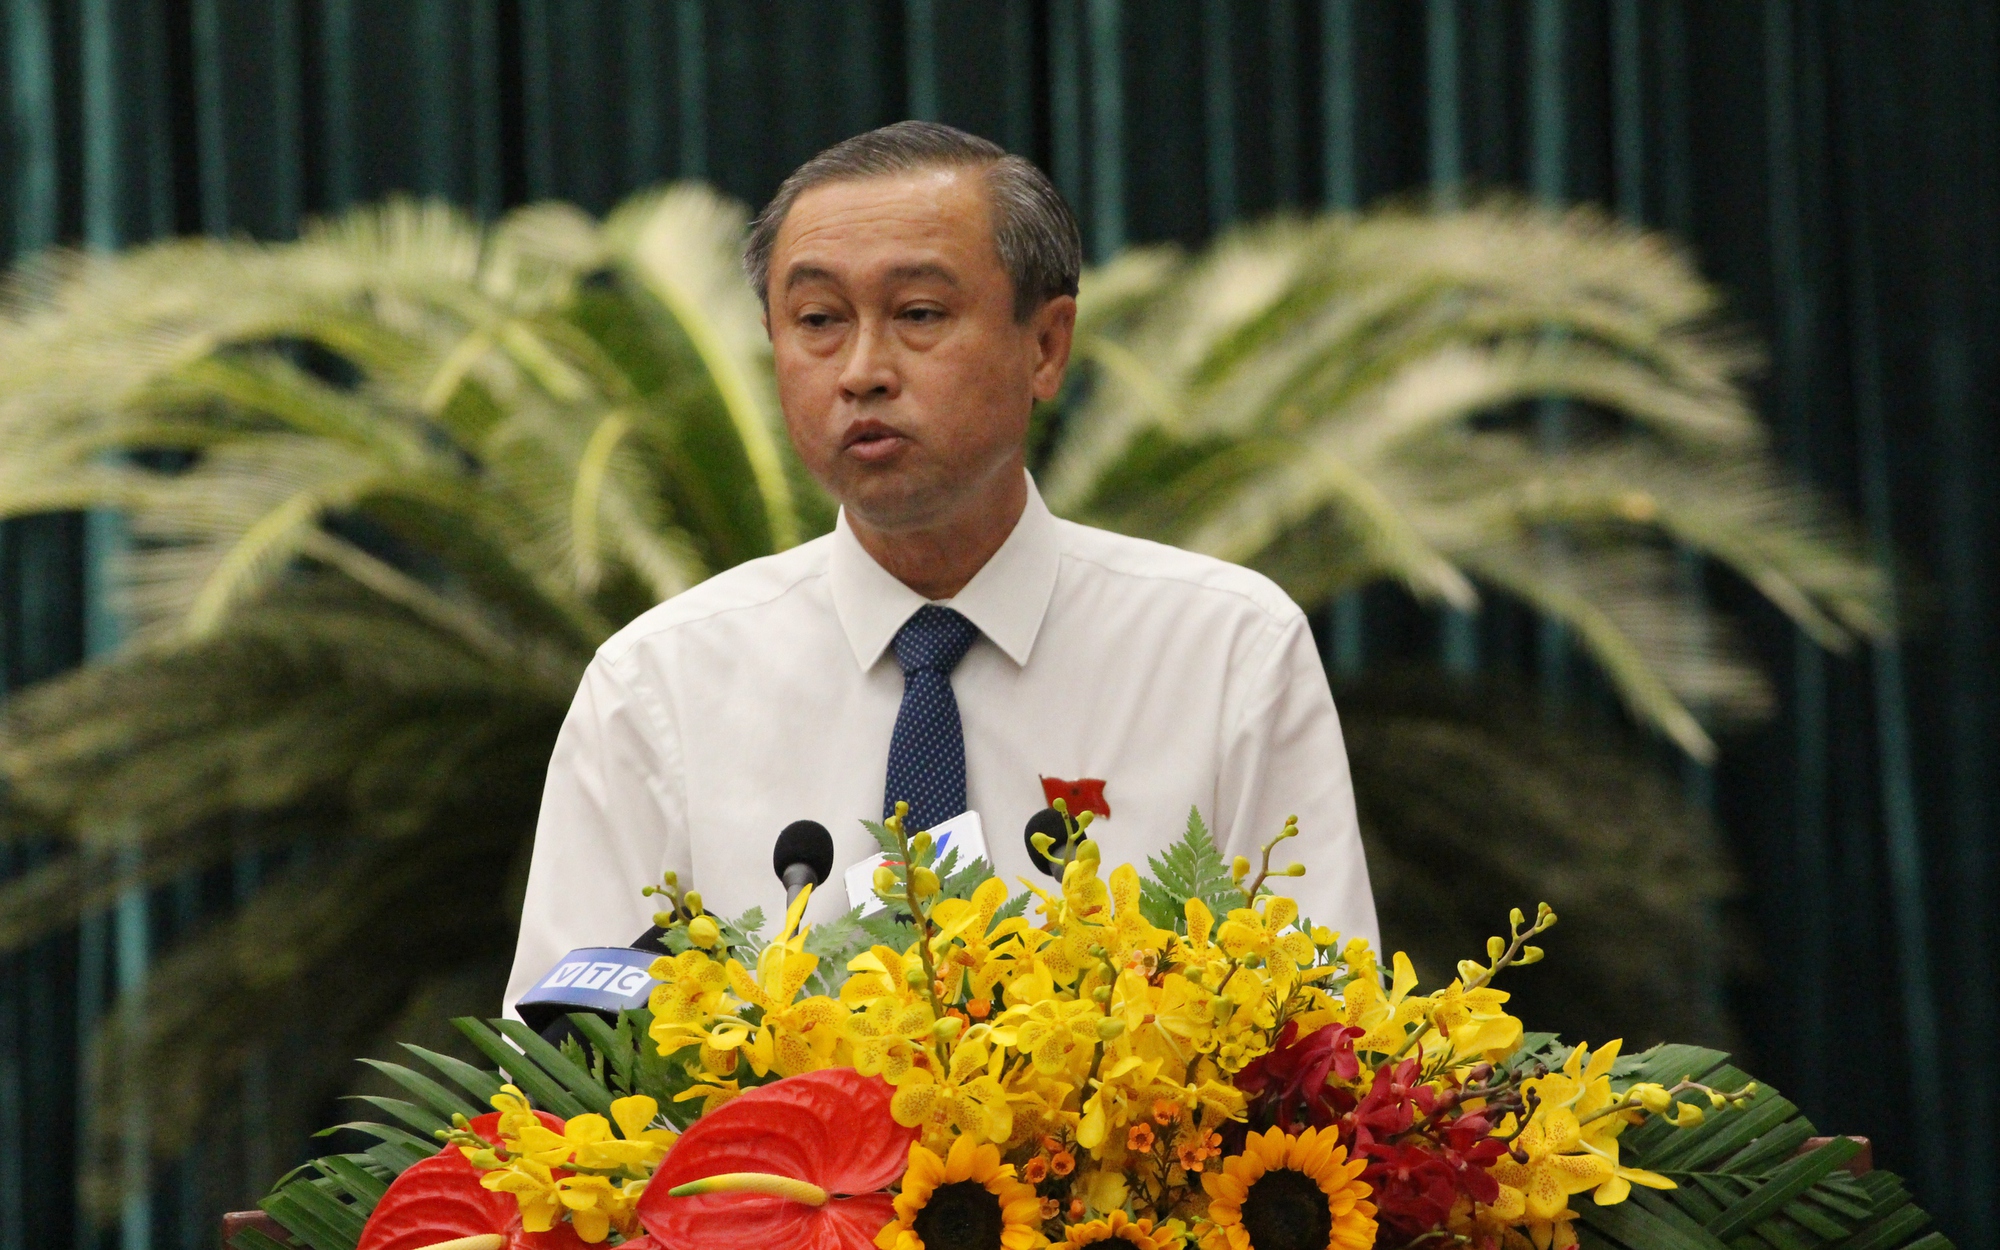 Ông Huỳnh Thanh Nhân được bầu làm Phó Chủ tịch HĐND TP.HCM